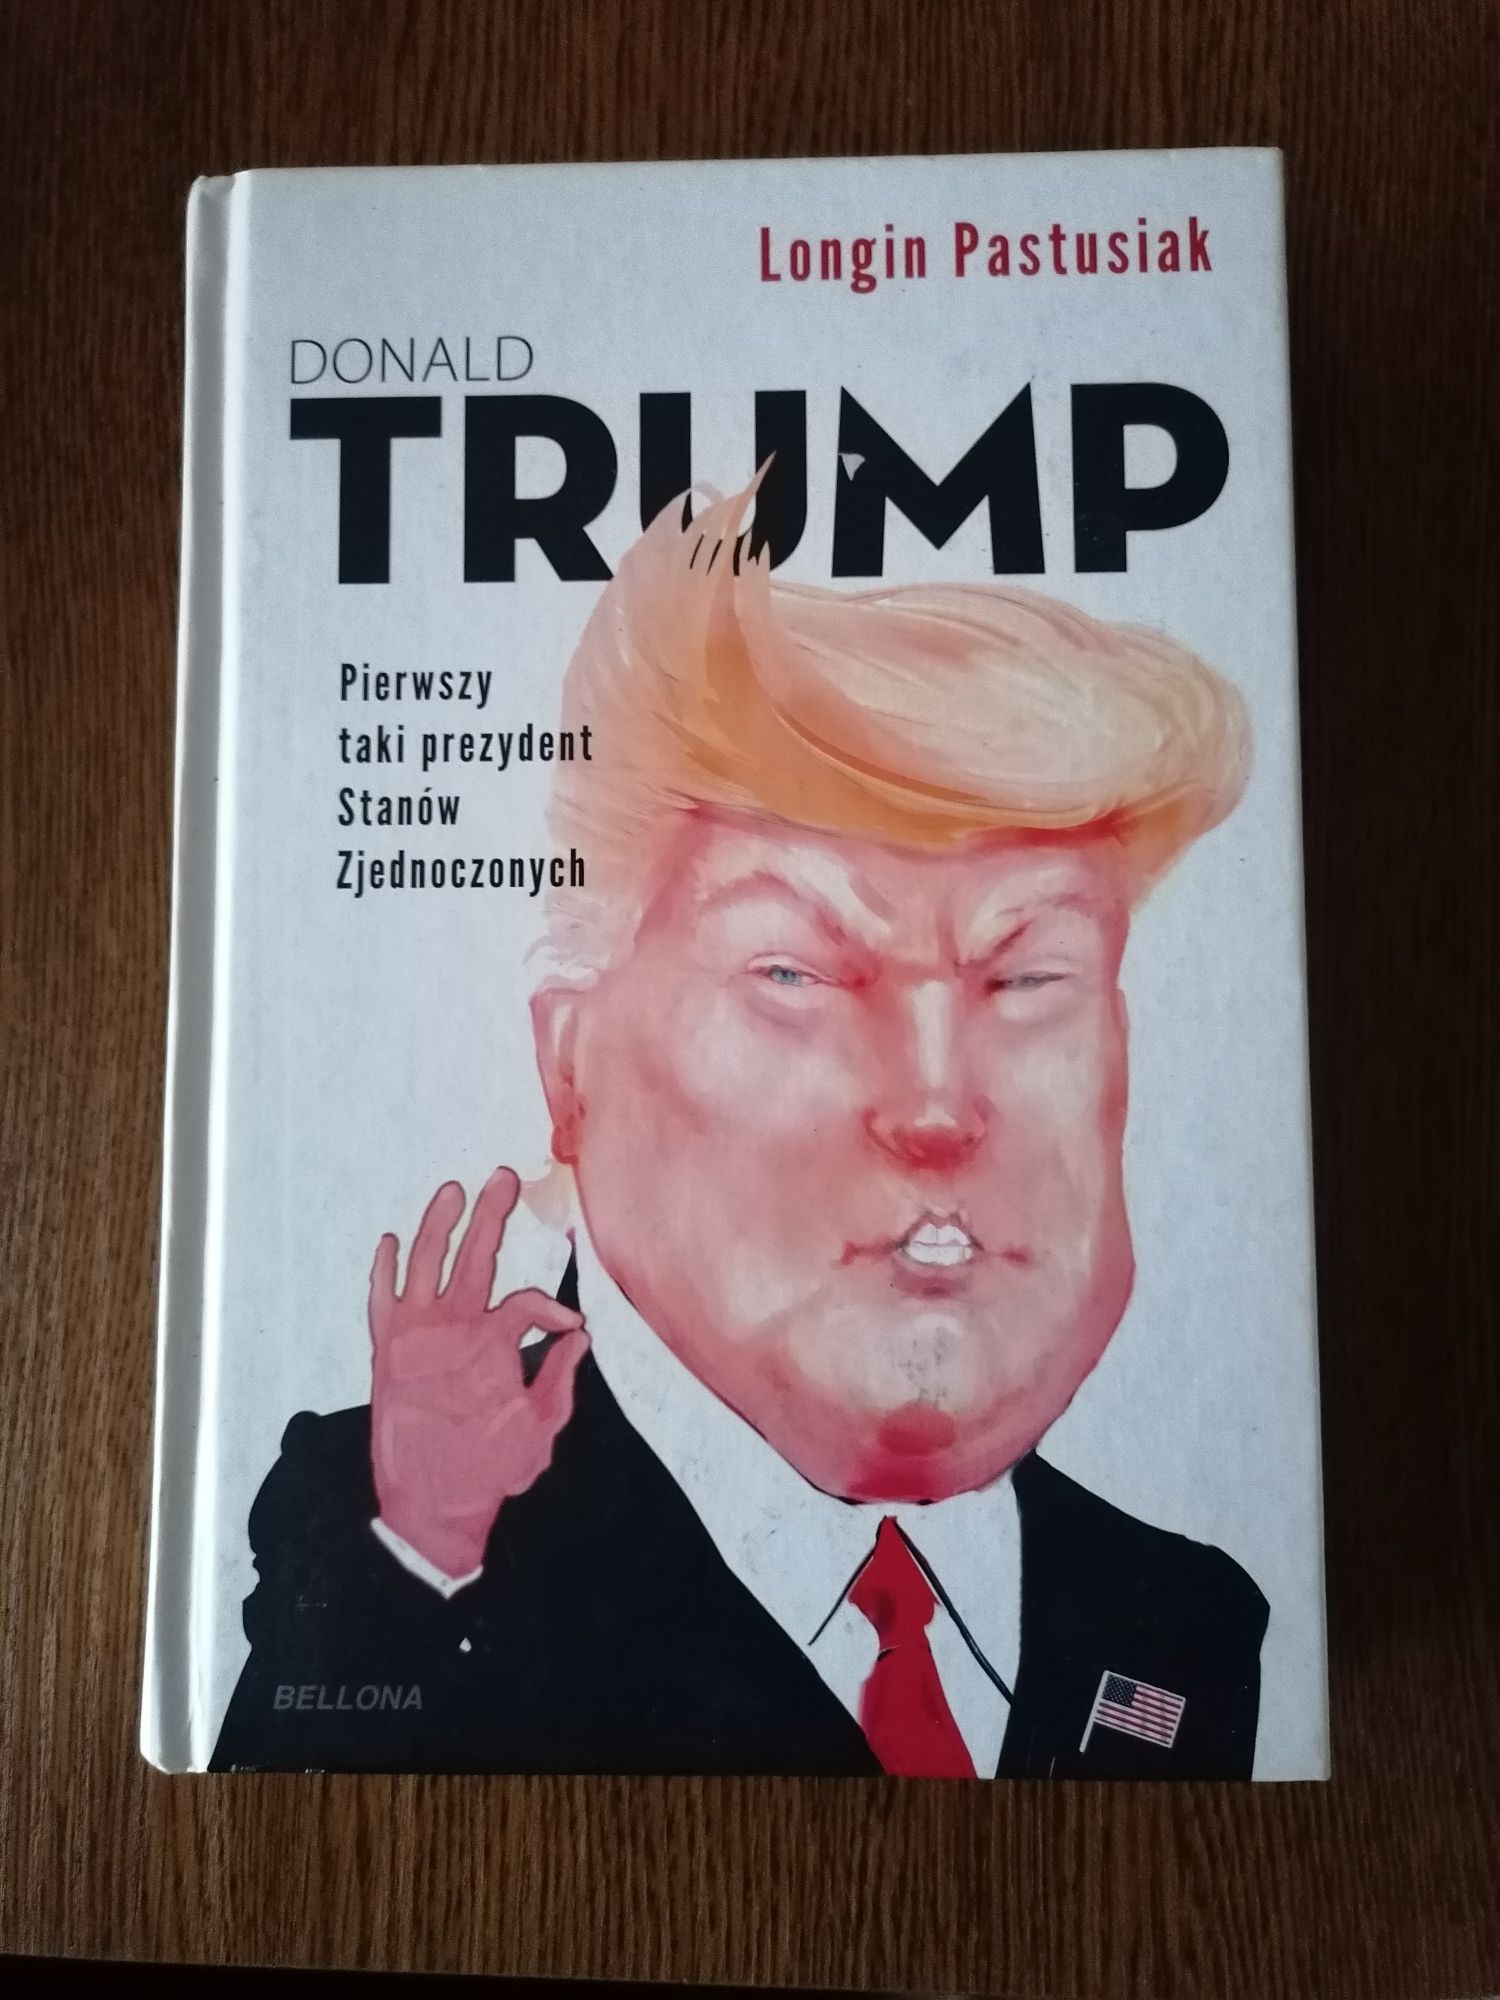 Książka Donald Trump Longin Pastusiak